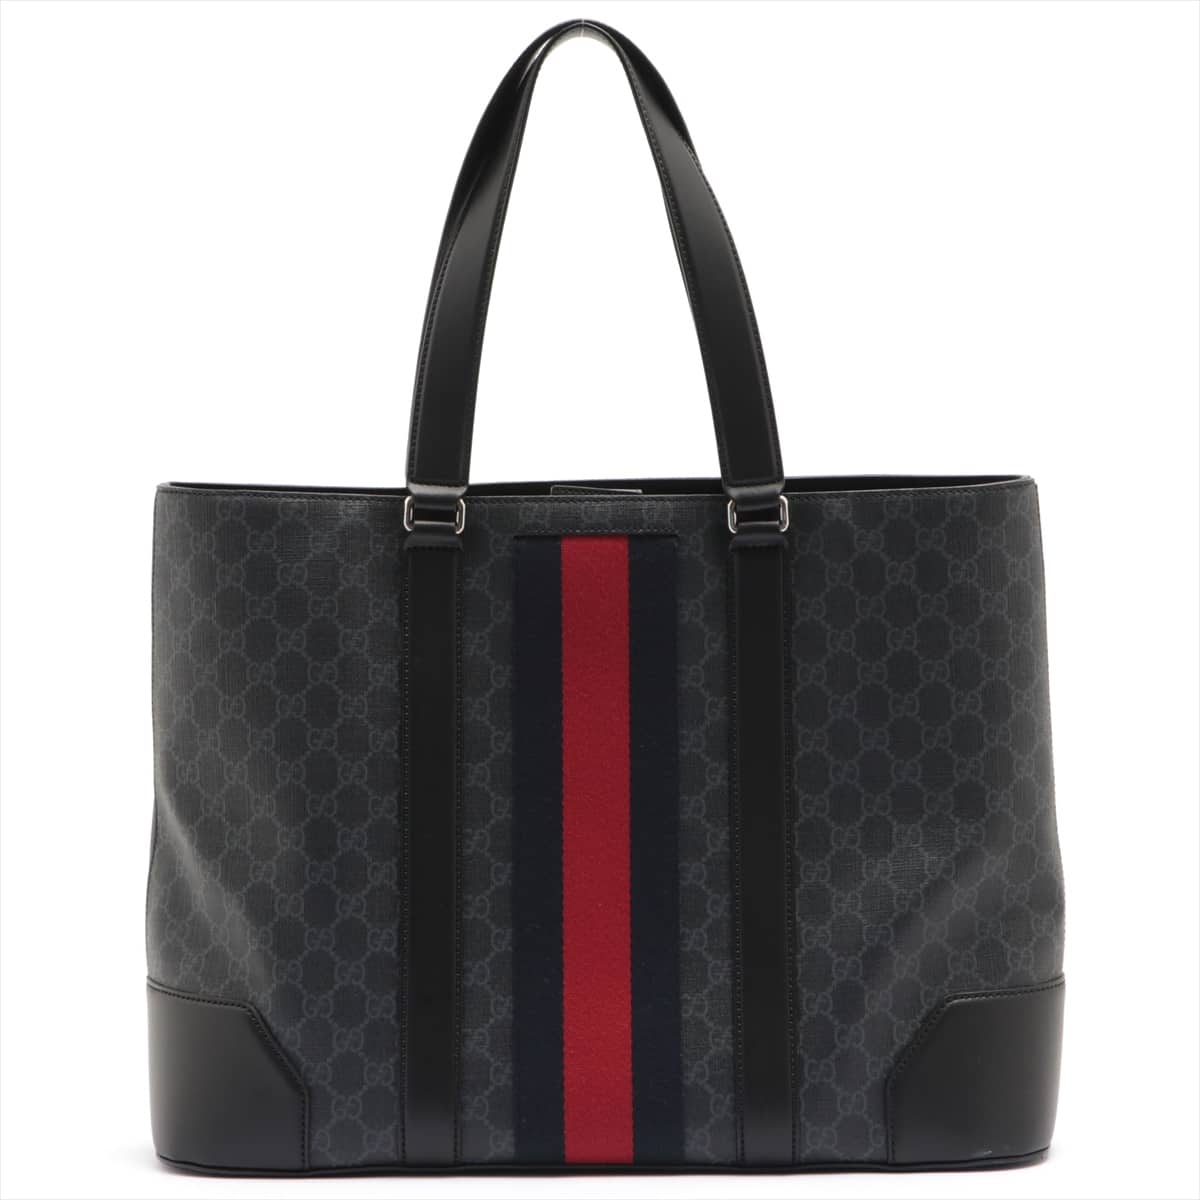 Gucci GG Supreme Tote bag Black 495560